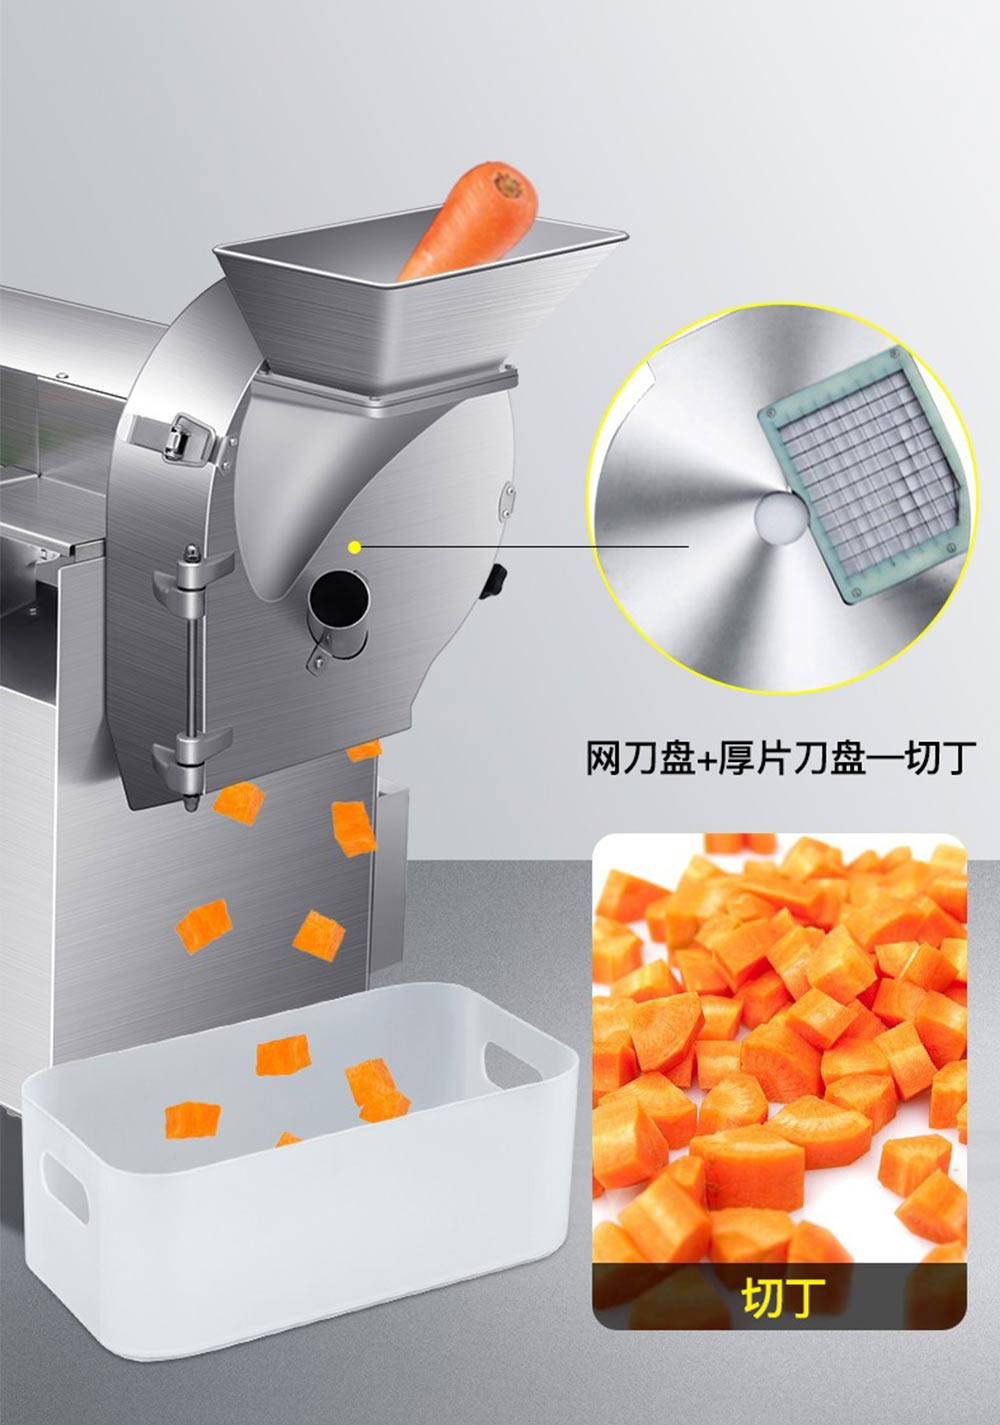 商用大型全自动多功能切菜机 切丁机 切片机(图11)